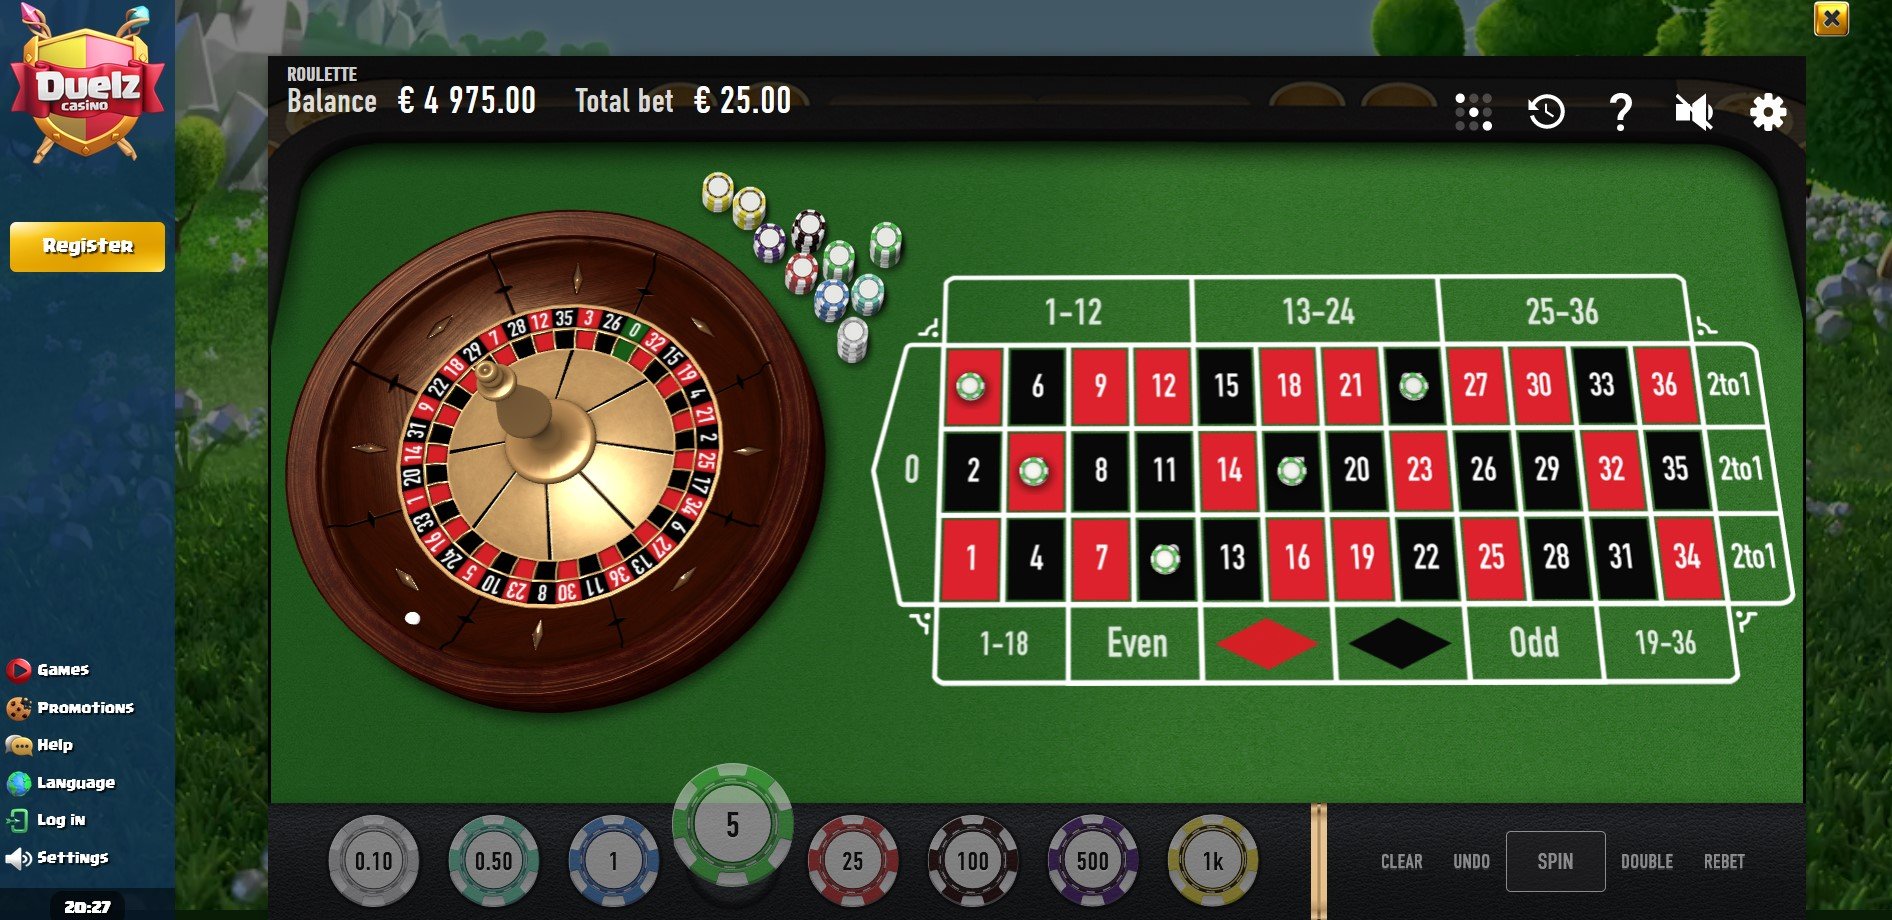 duelz online casino - Casino games